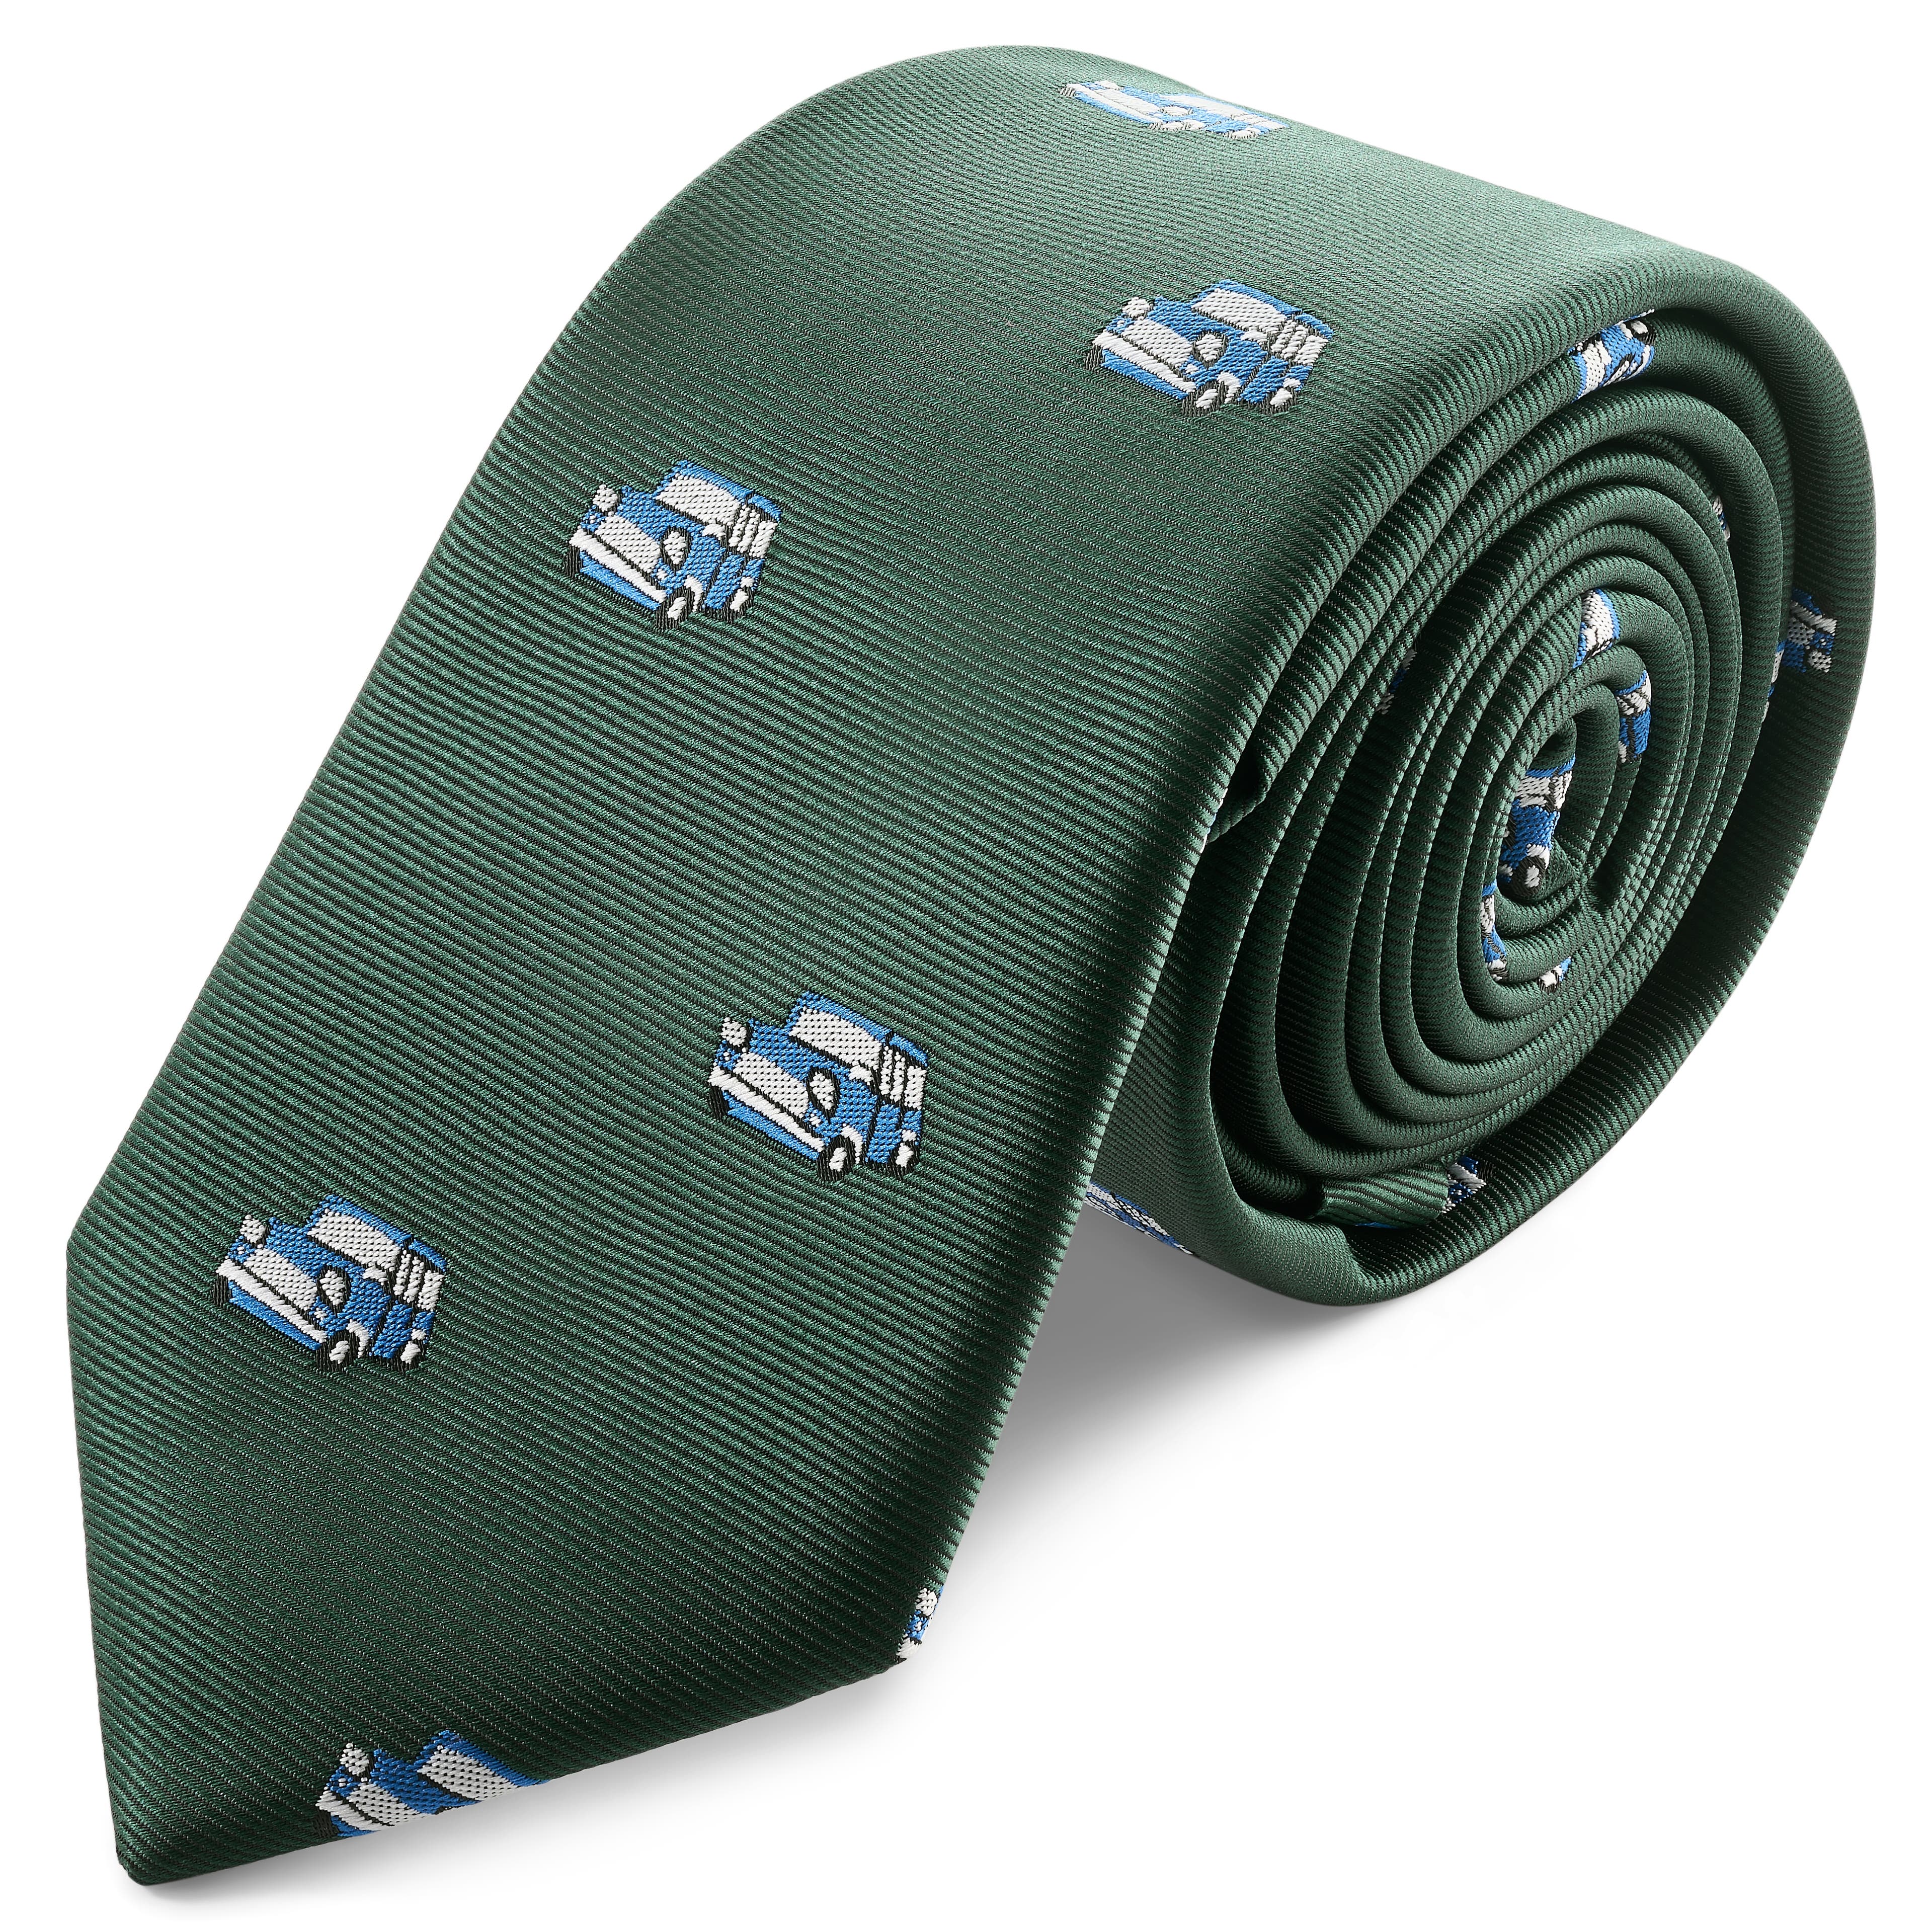 Motos | 2 3/8" (6 cm) Green Big Car Tie